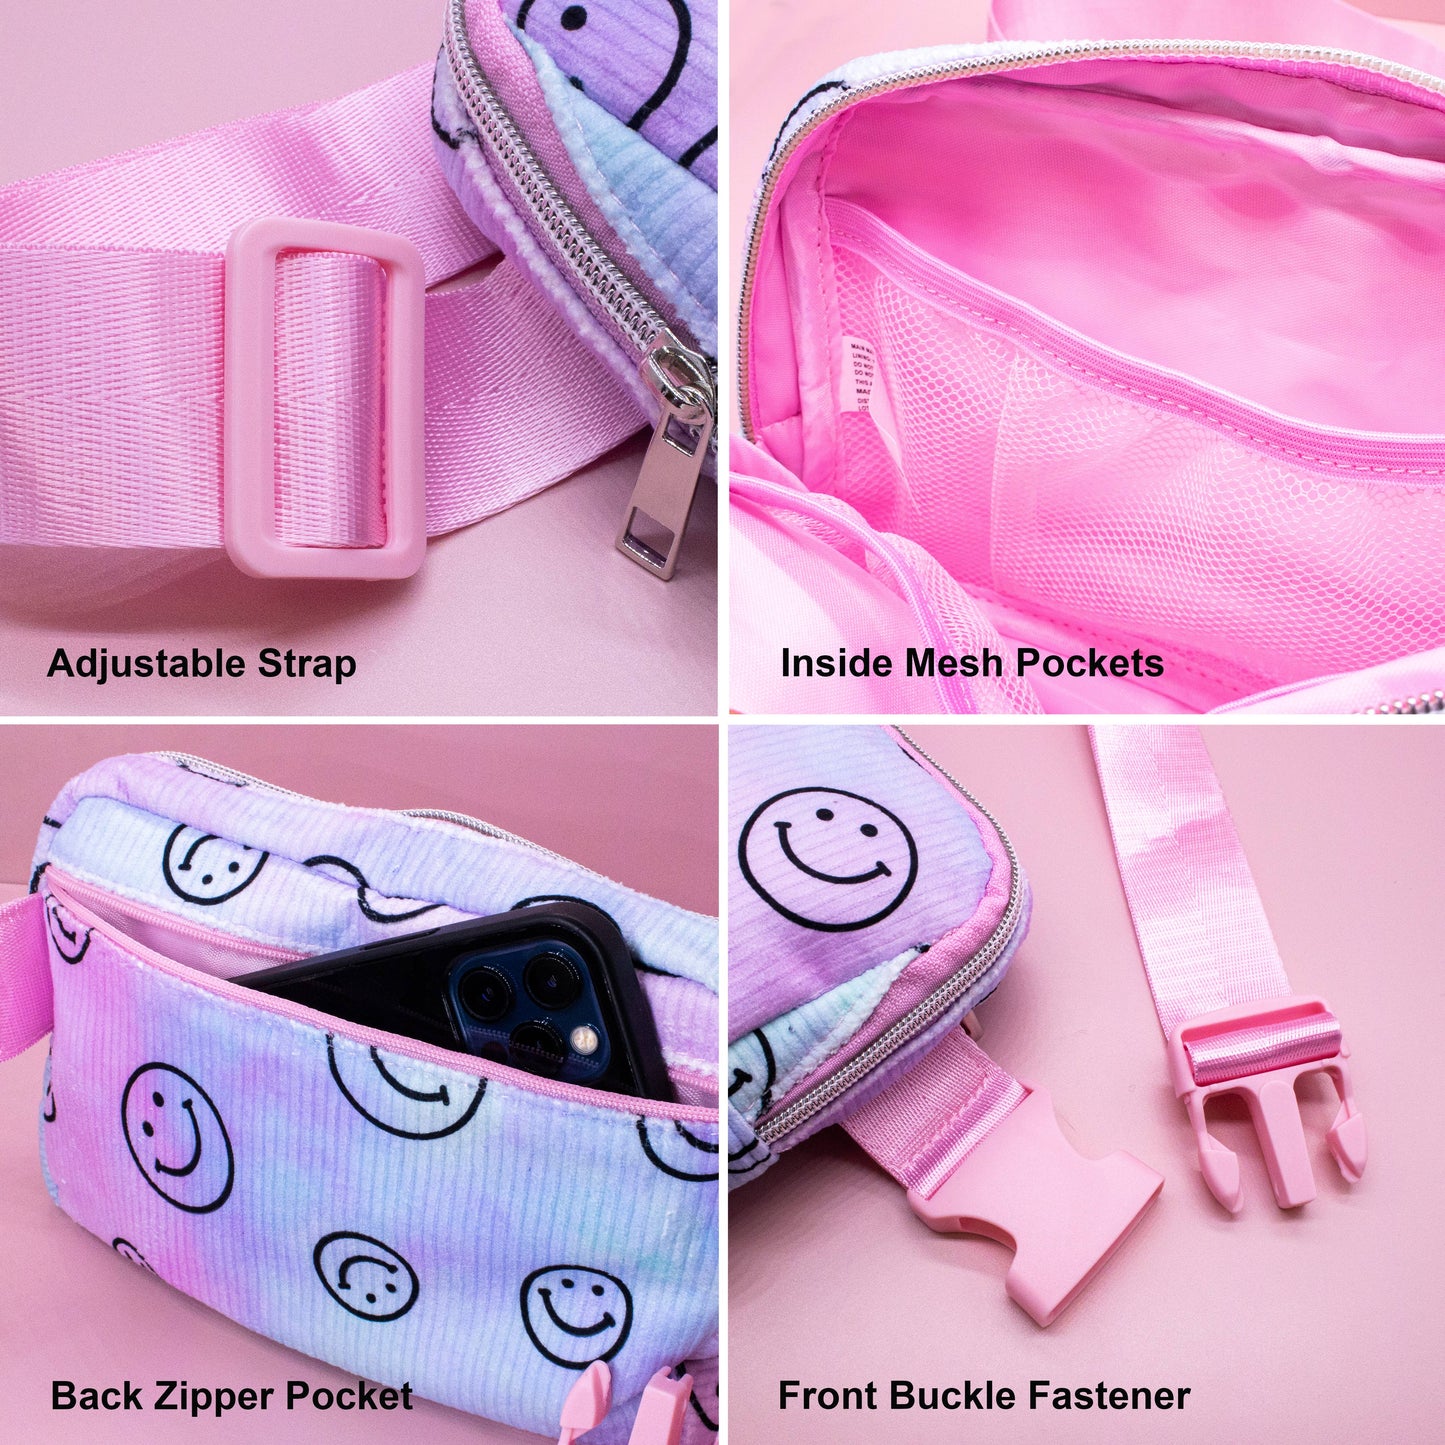 Kids Belt Bag - Tie Dye Smiley Face Crossbody Fanny Pack